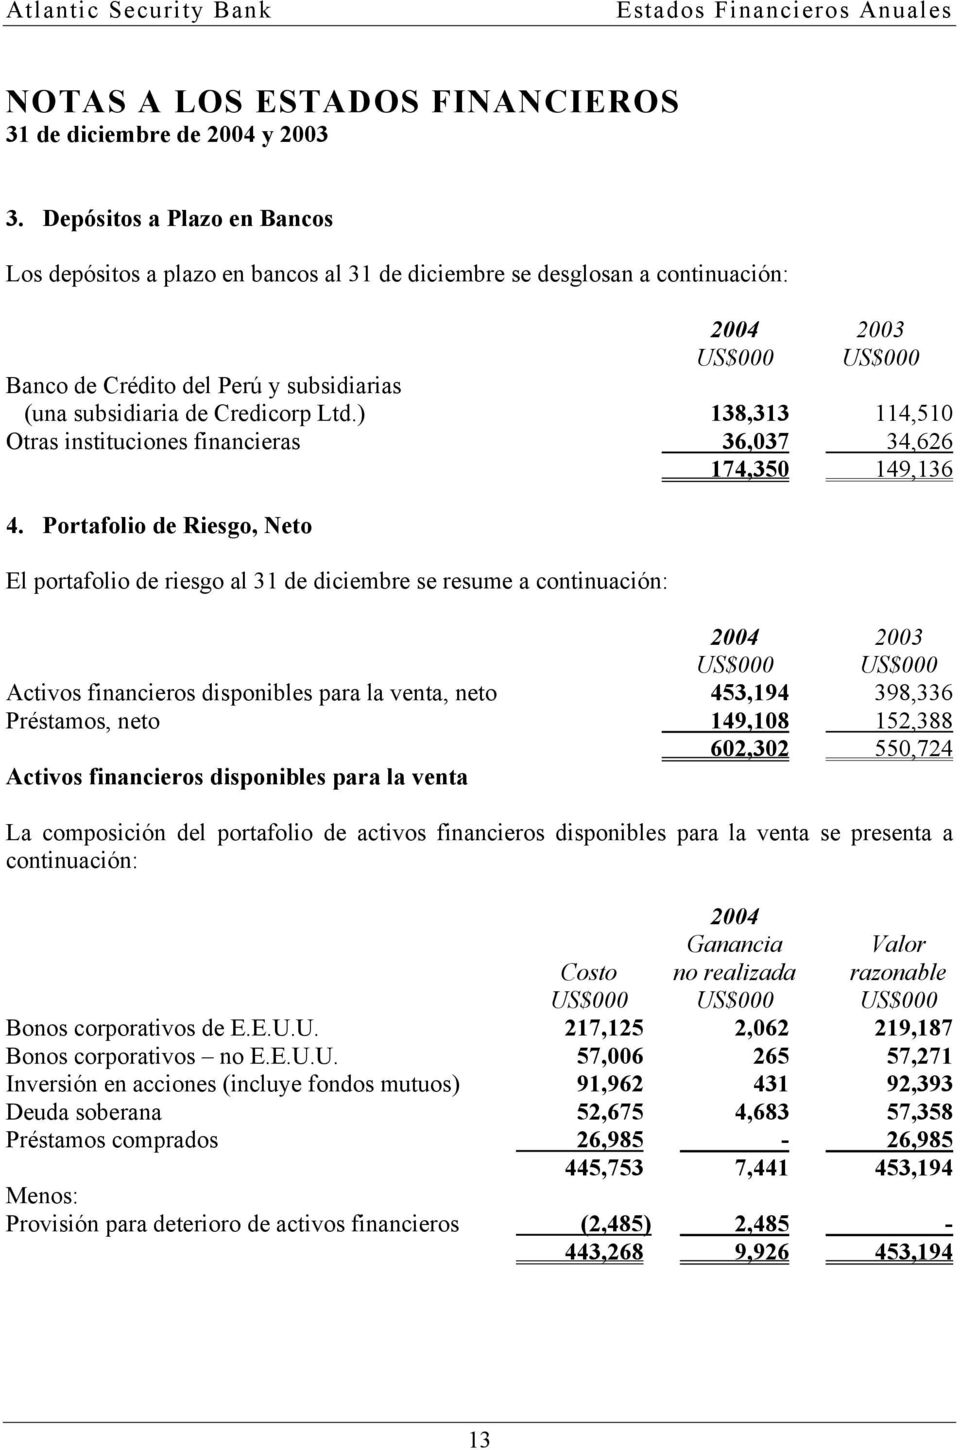 Portafolio de Riesgo, Neto El portafolio de riesgo al 31 de diciembre se resume a continuación: 2004 2003 Activos financieros disponibles para la venta, neto 453,194 398,336 Préstamos, neto 149,108